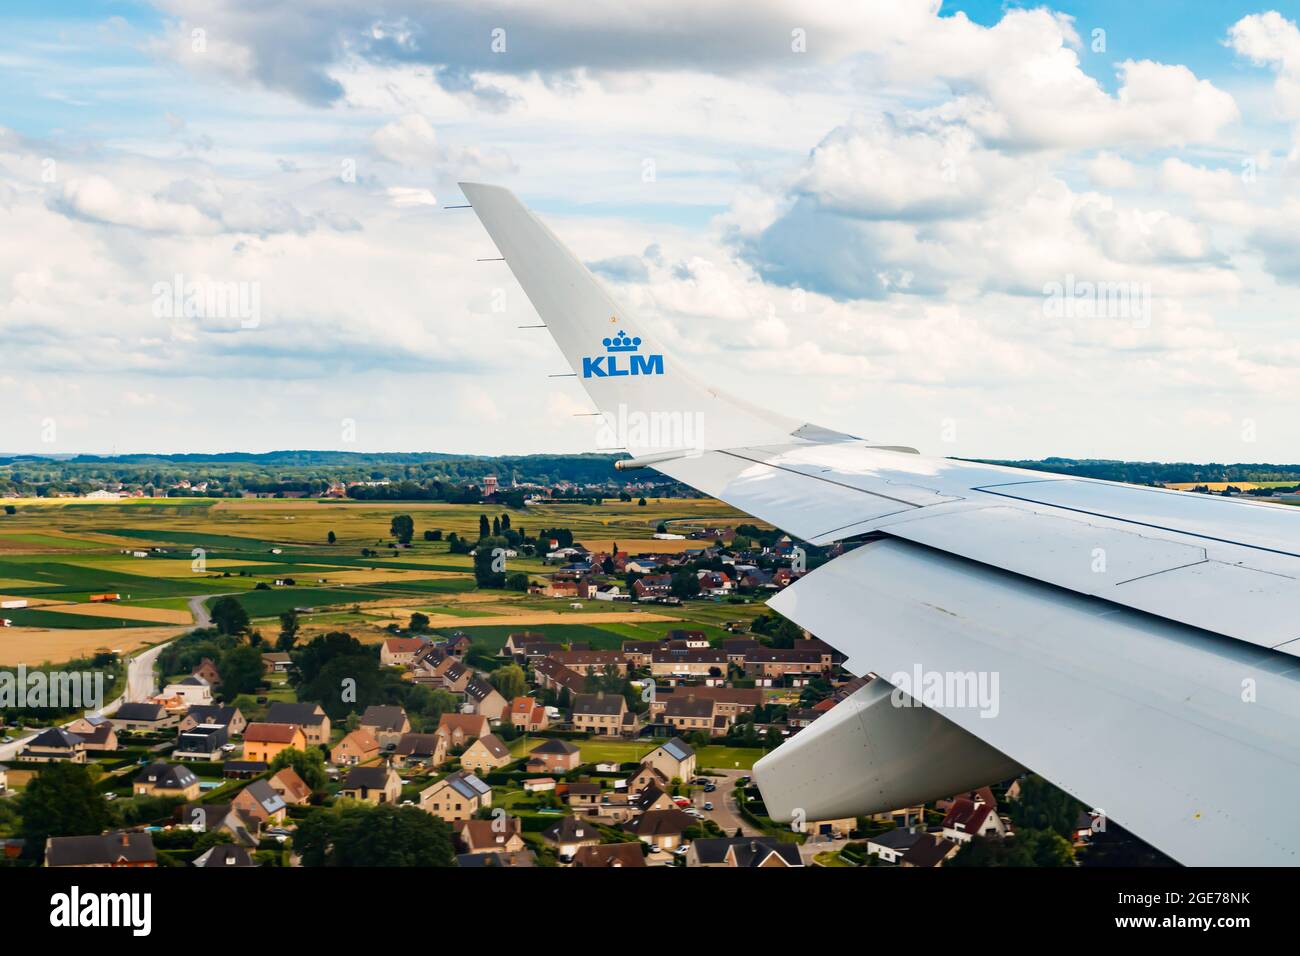 Bruxelles, Belgio - 7 luglio 2021: Ala piana di KLM sul Belgio. Volo da Amsterdam a Bruxelles. Pianura sta atterrando. Foto Stock